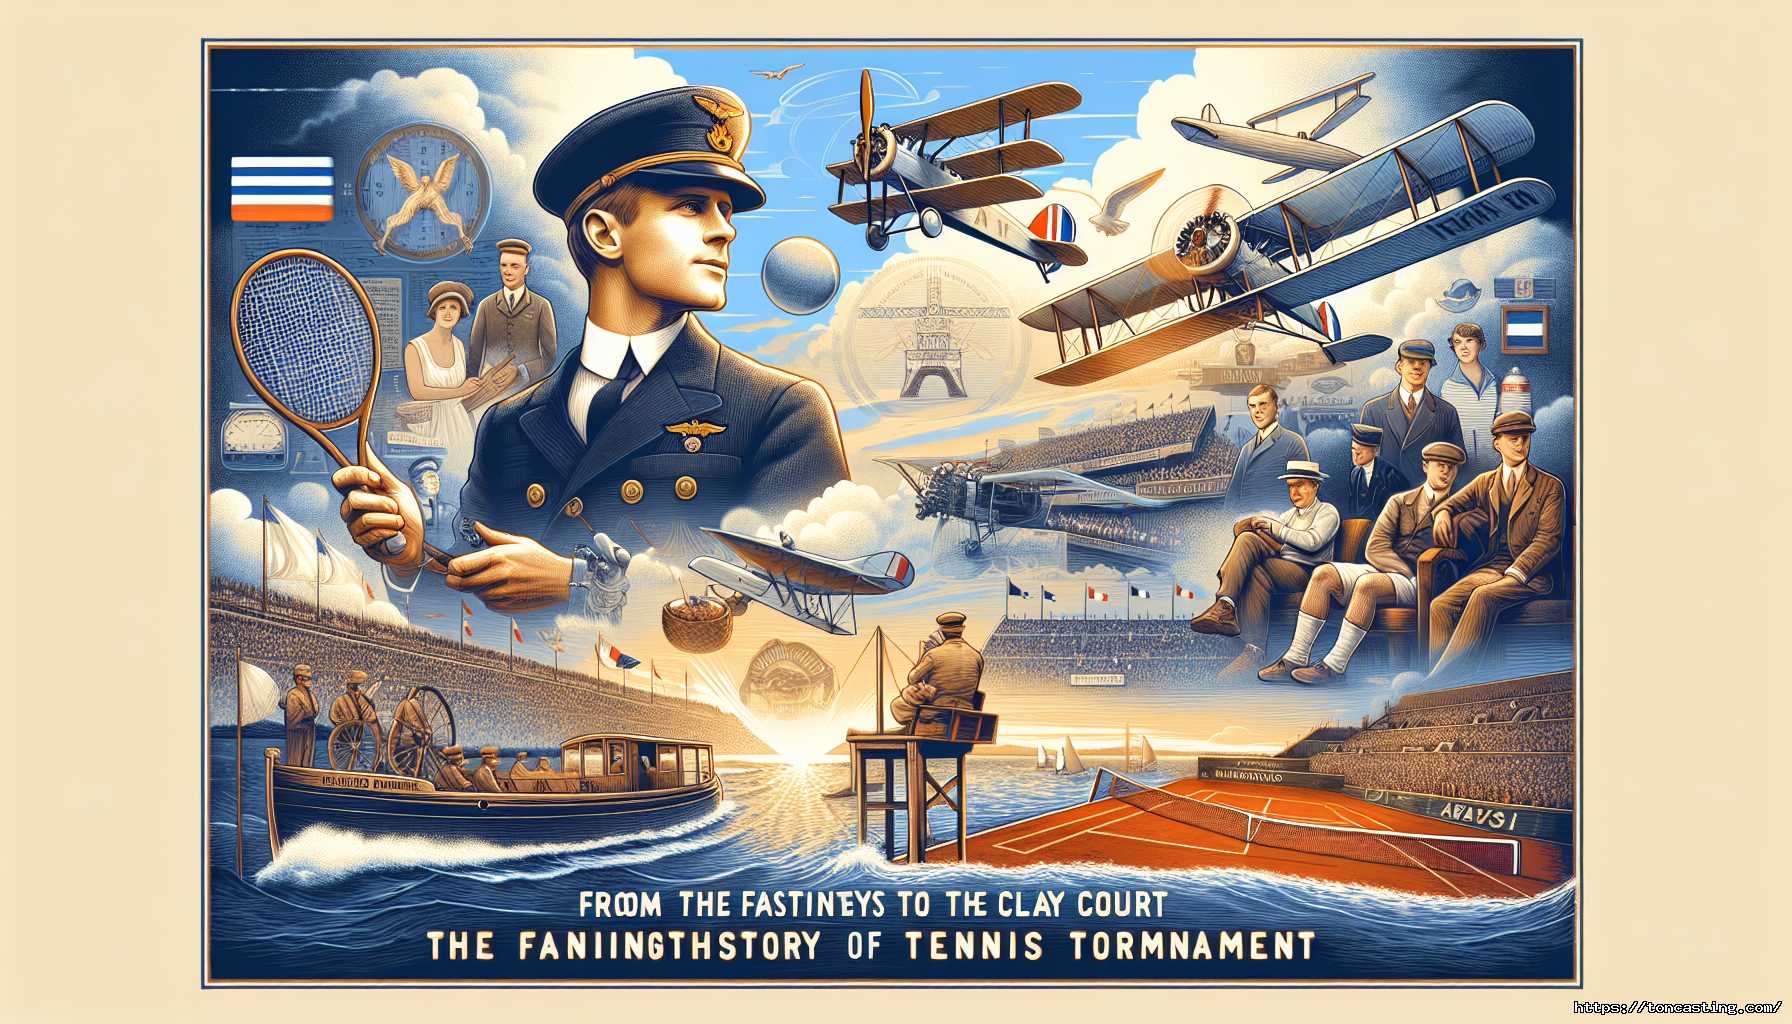 Affiche rétro de la révolution du tennis avec des avions et des scènes historiques.